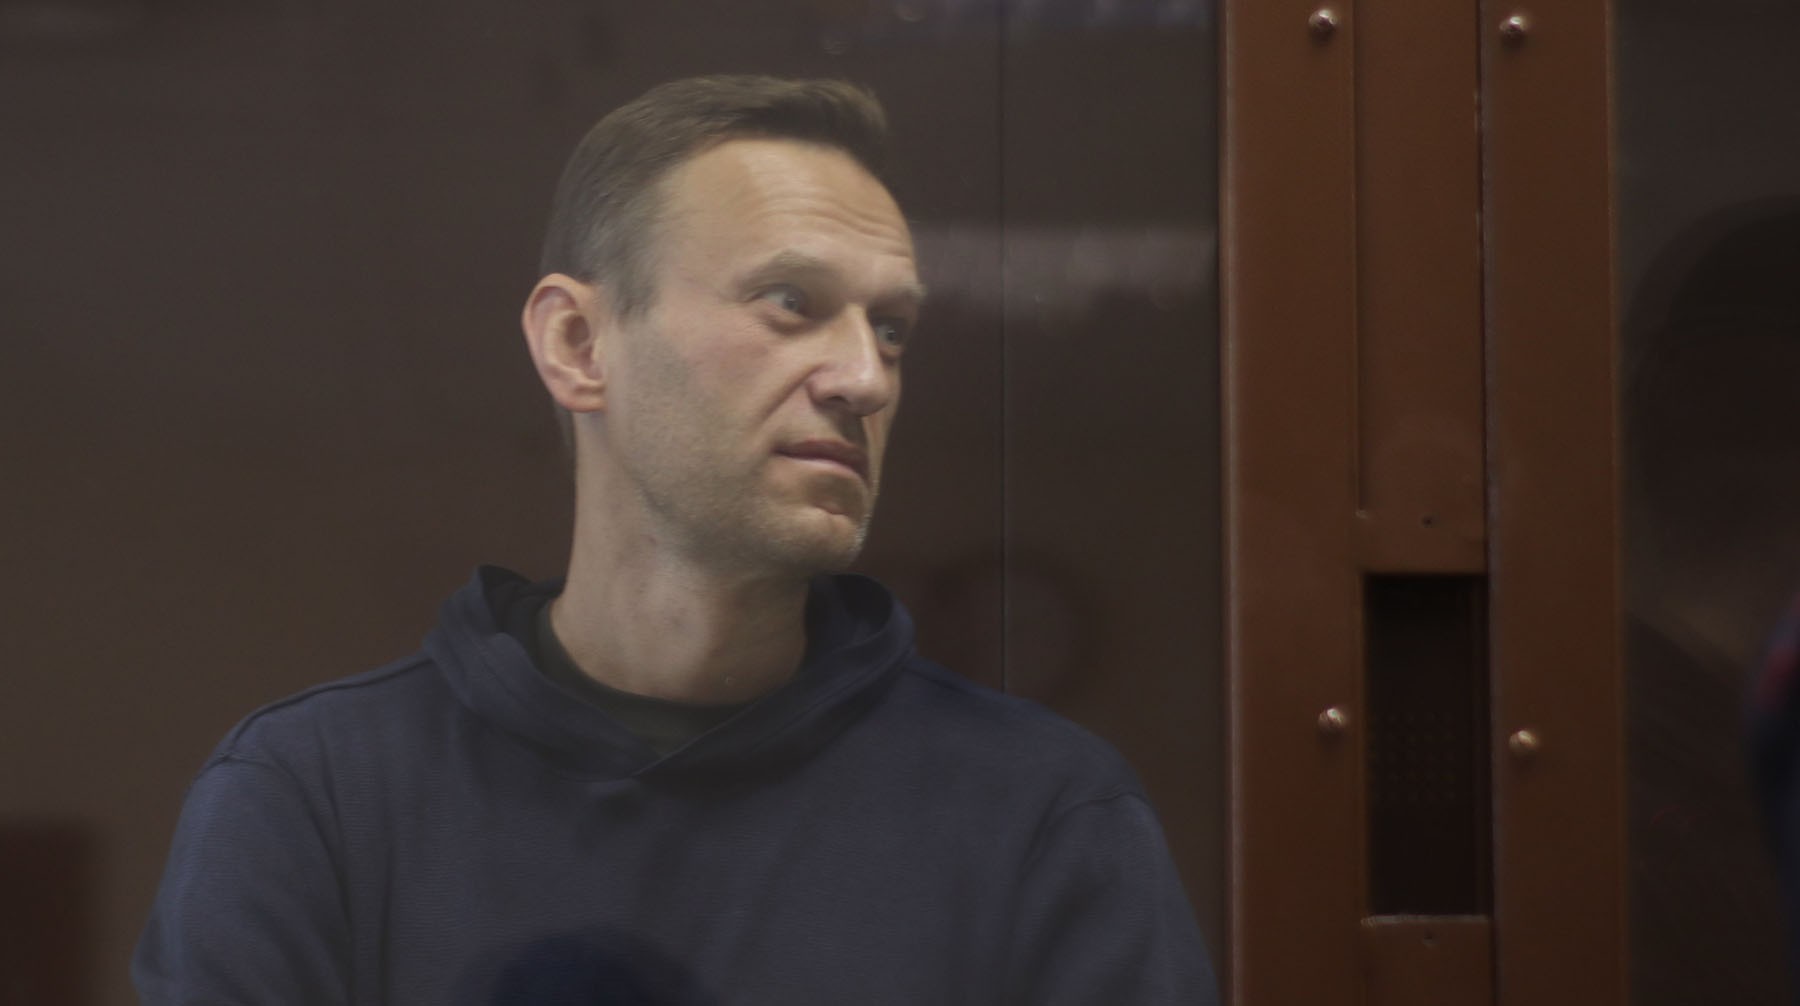 Dailystorm - Вы — оберштурмбаннфюрер: Навальный поиздевался над судьей